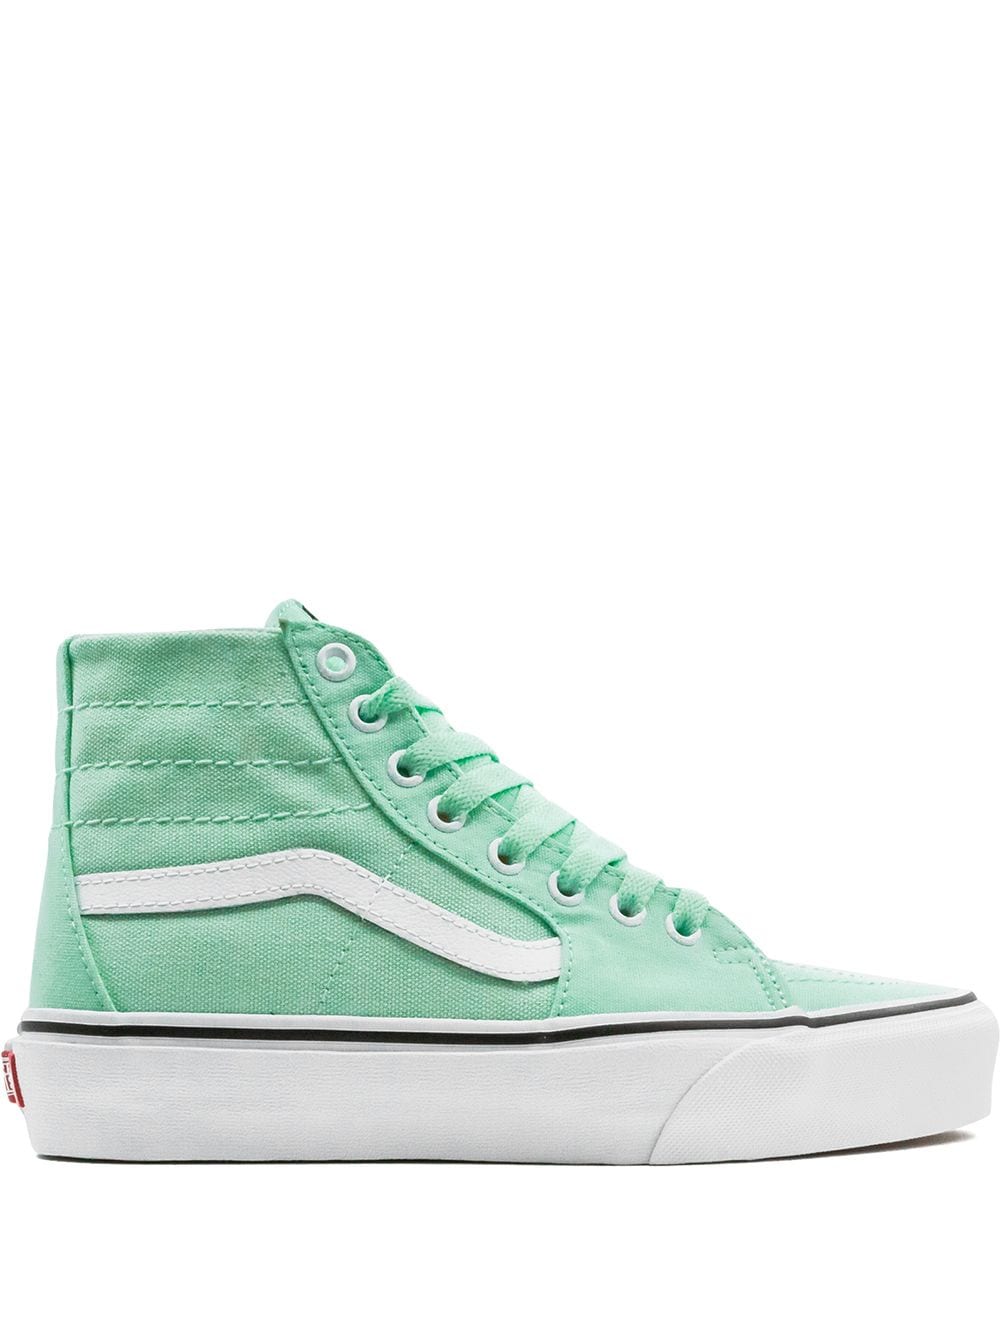 Vans Sk8-Hi "Bay/True White" sneakers - Green von Vans